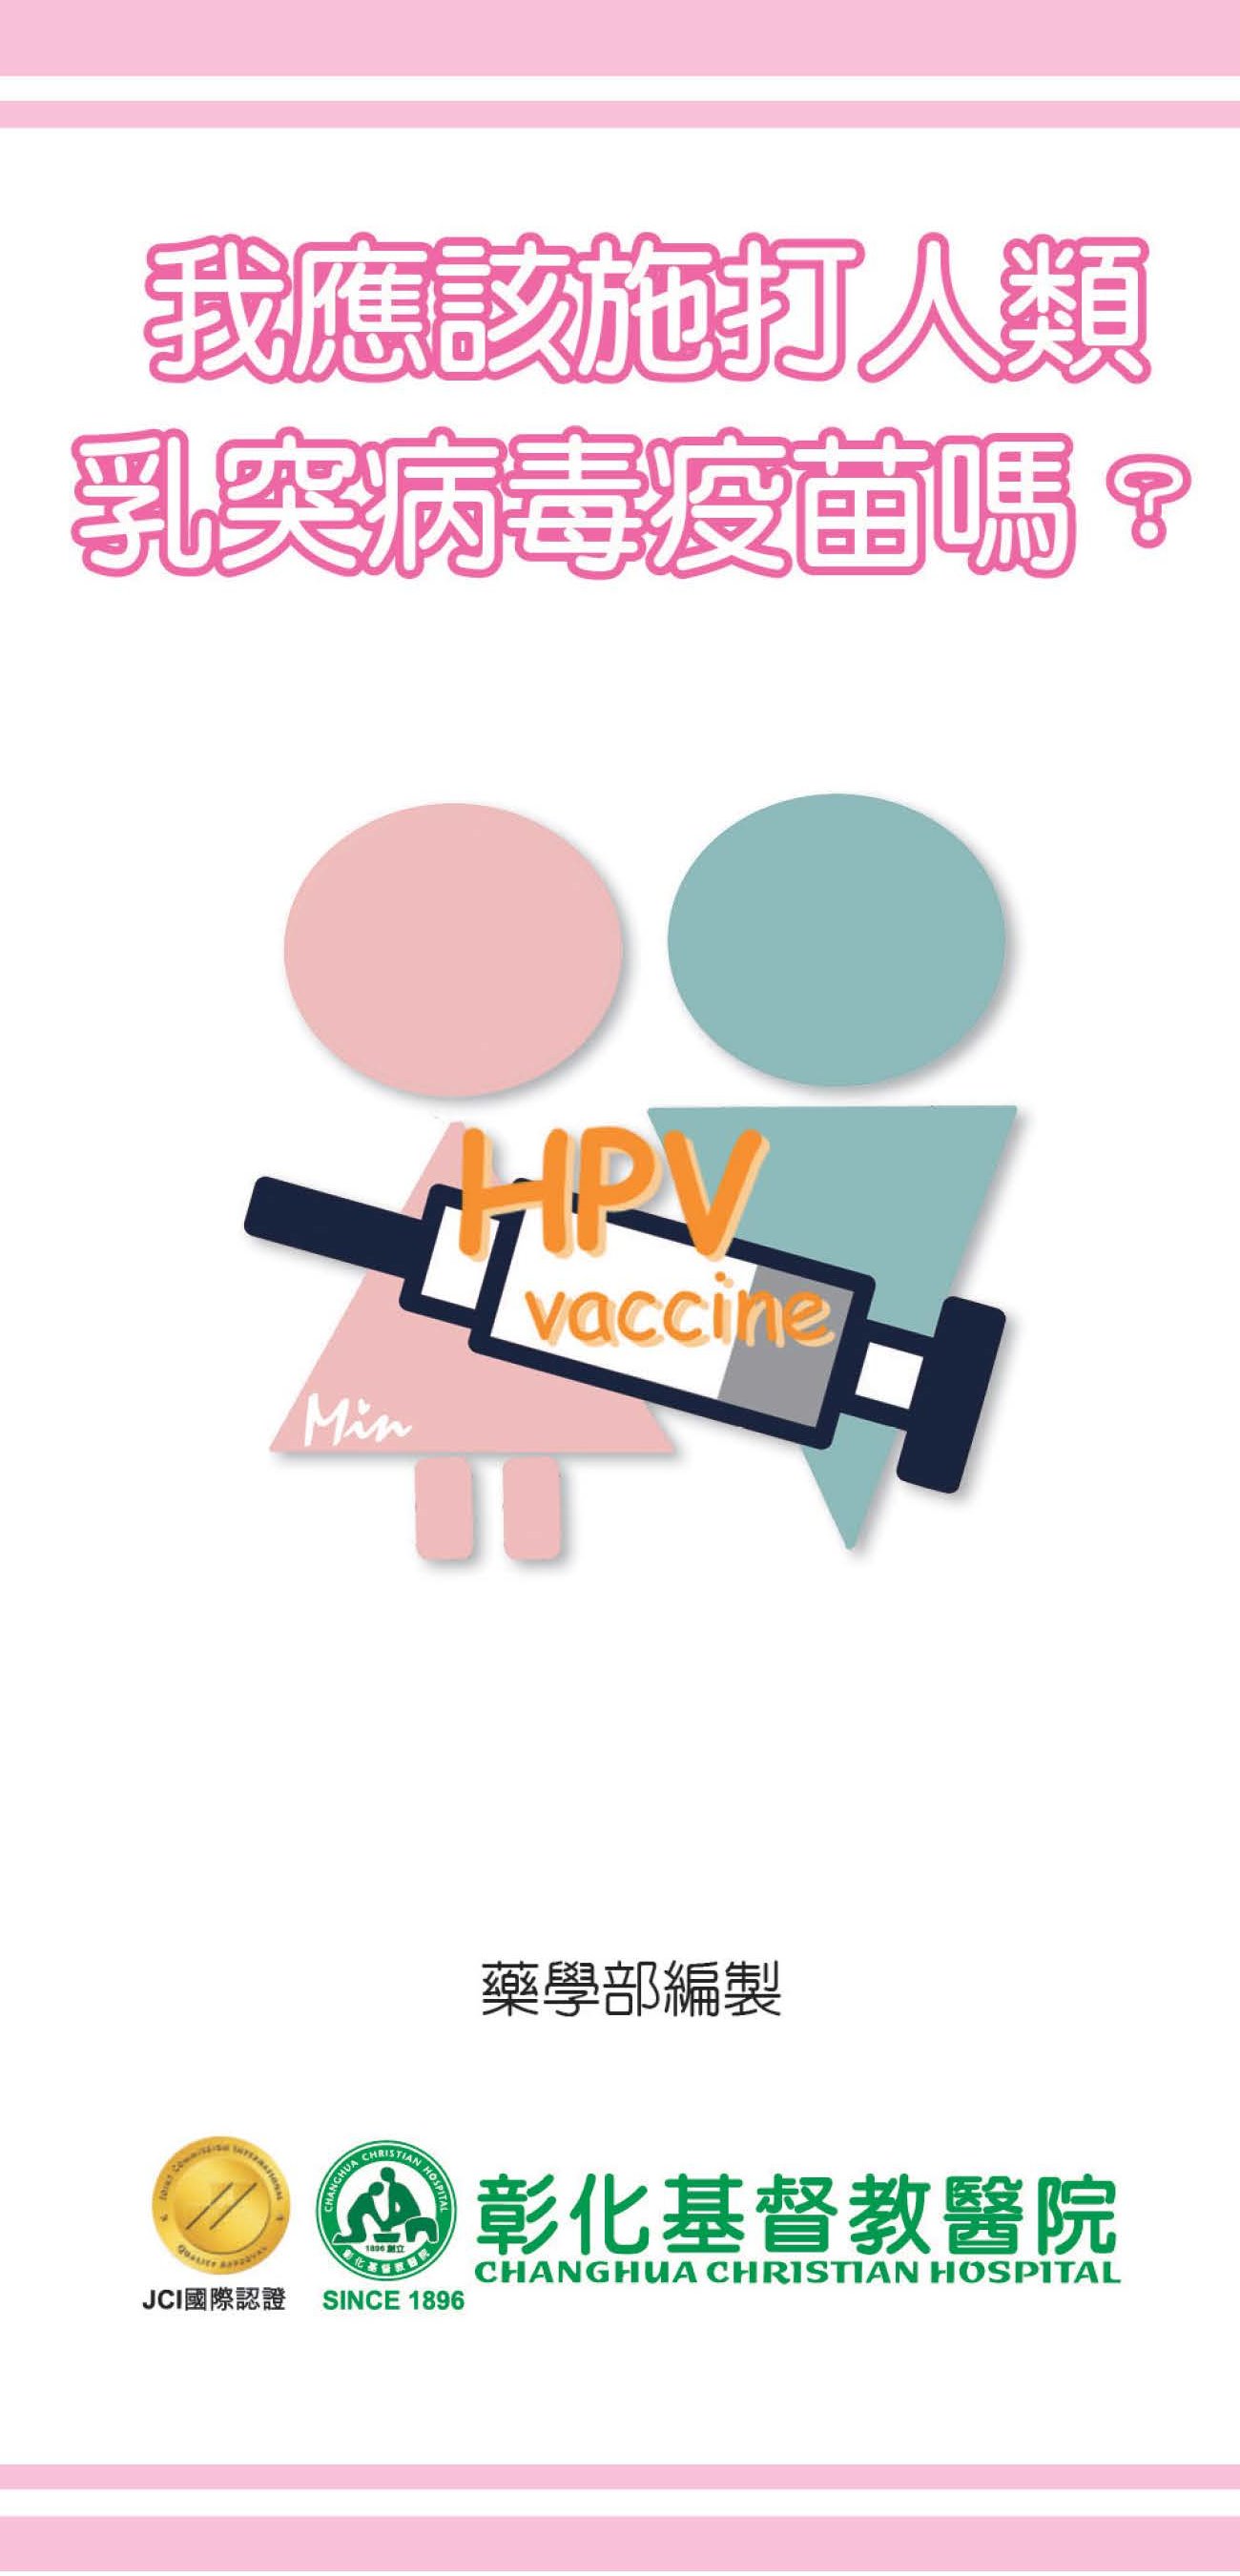 我應該施打人類乳突病毒疫苗嗎？